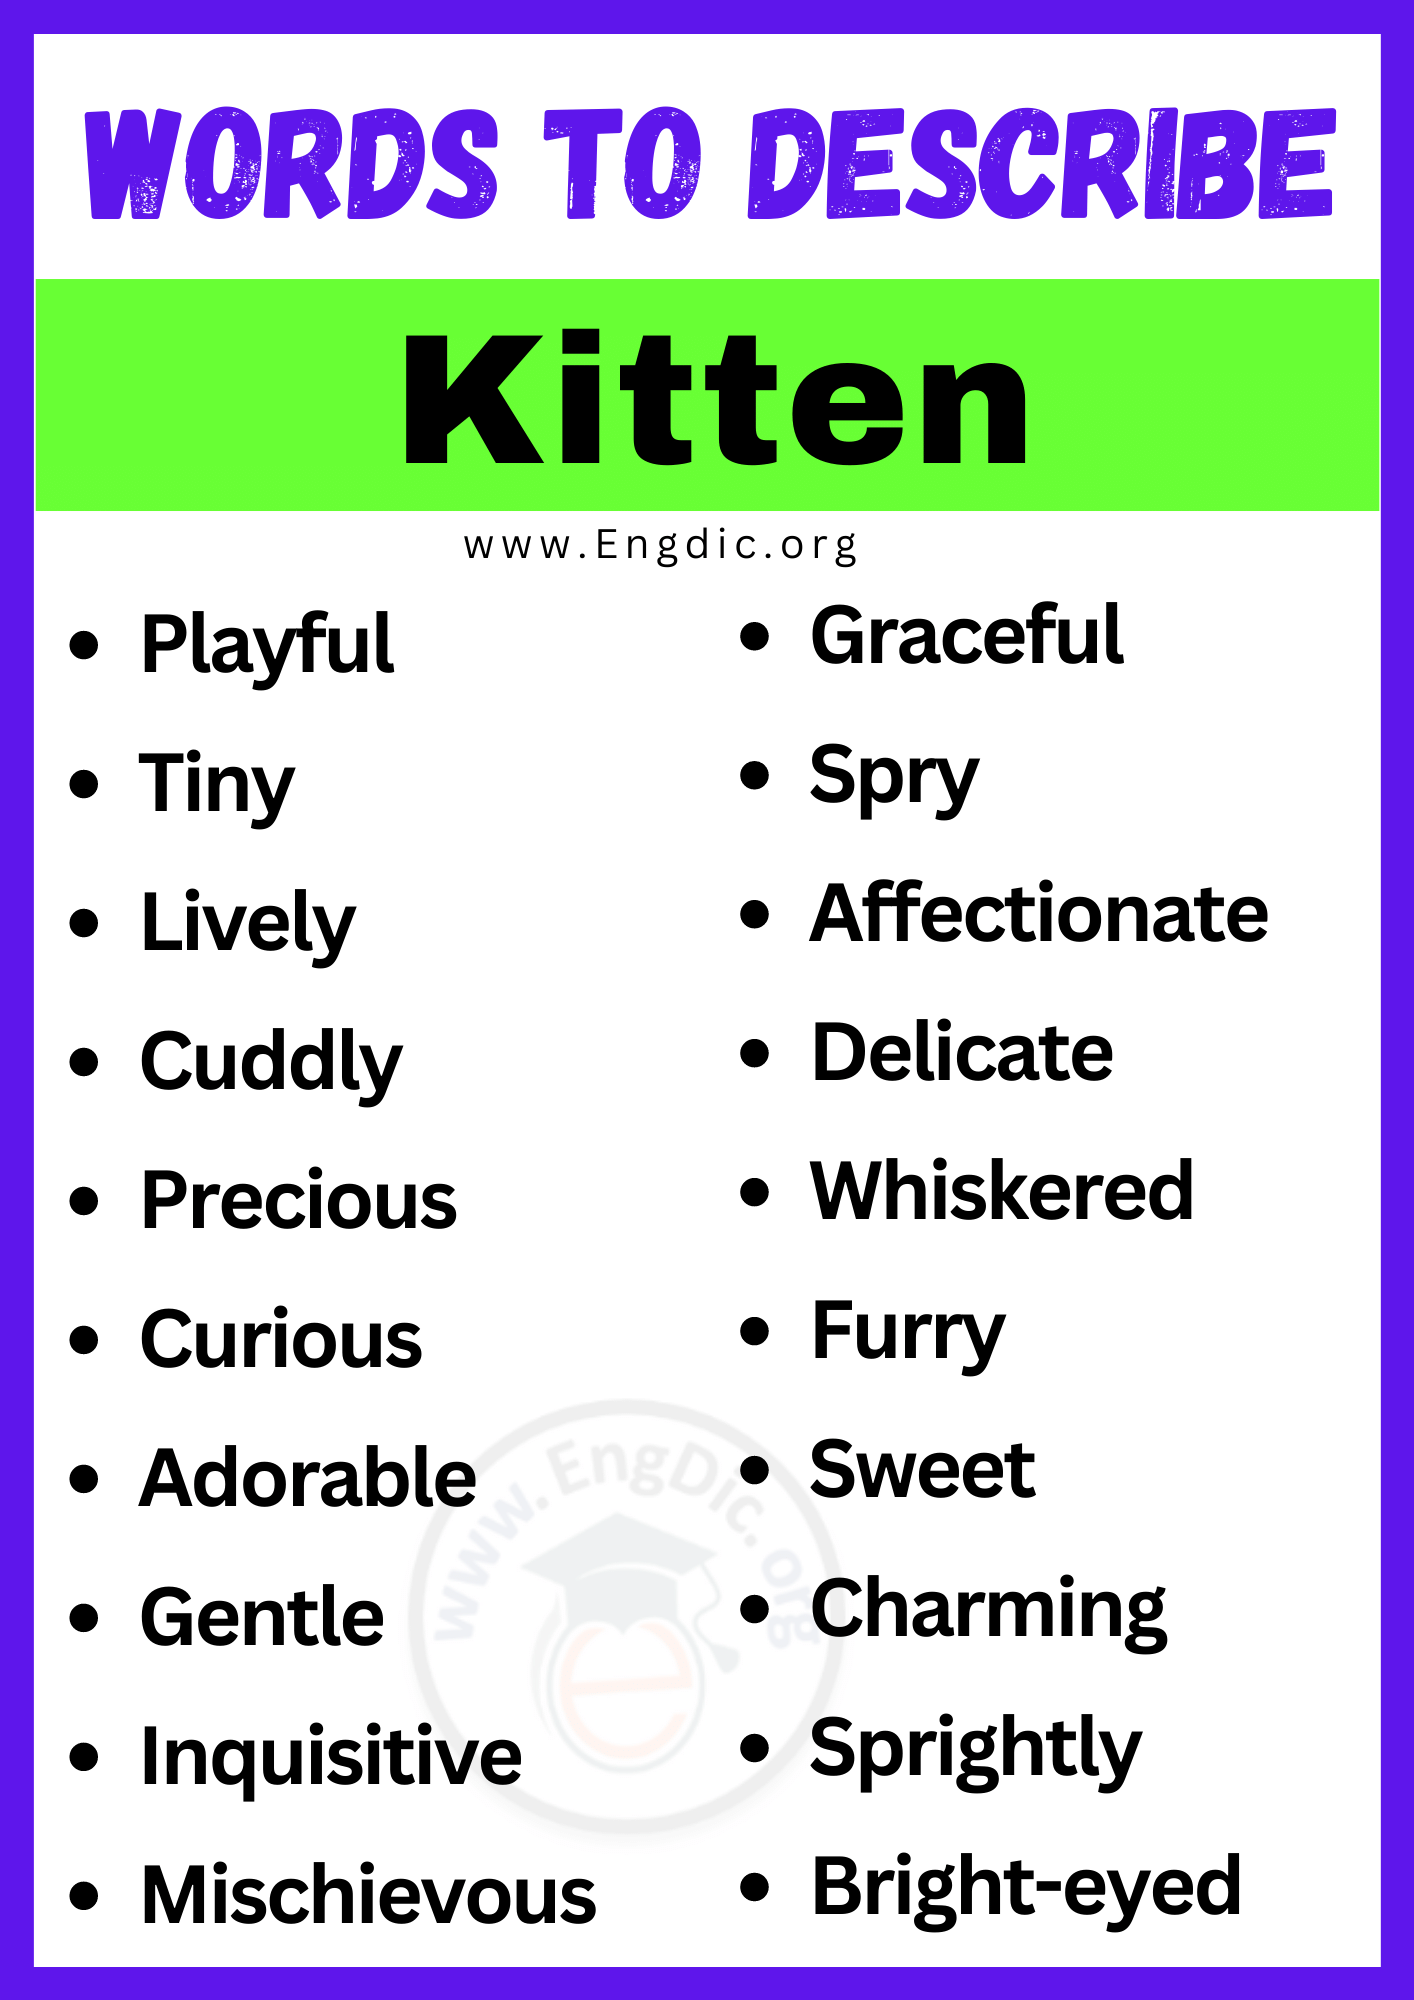 Words to Describe Kitten